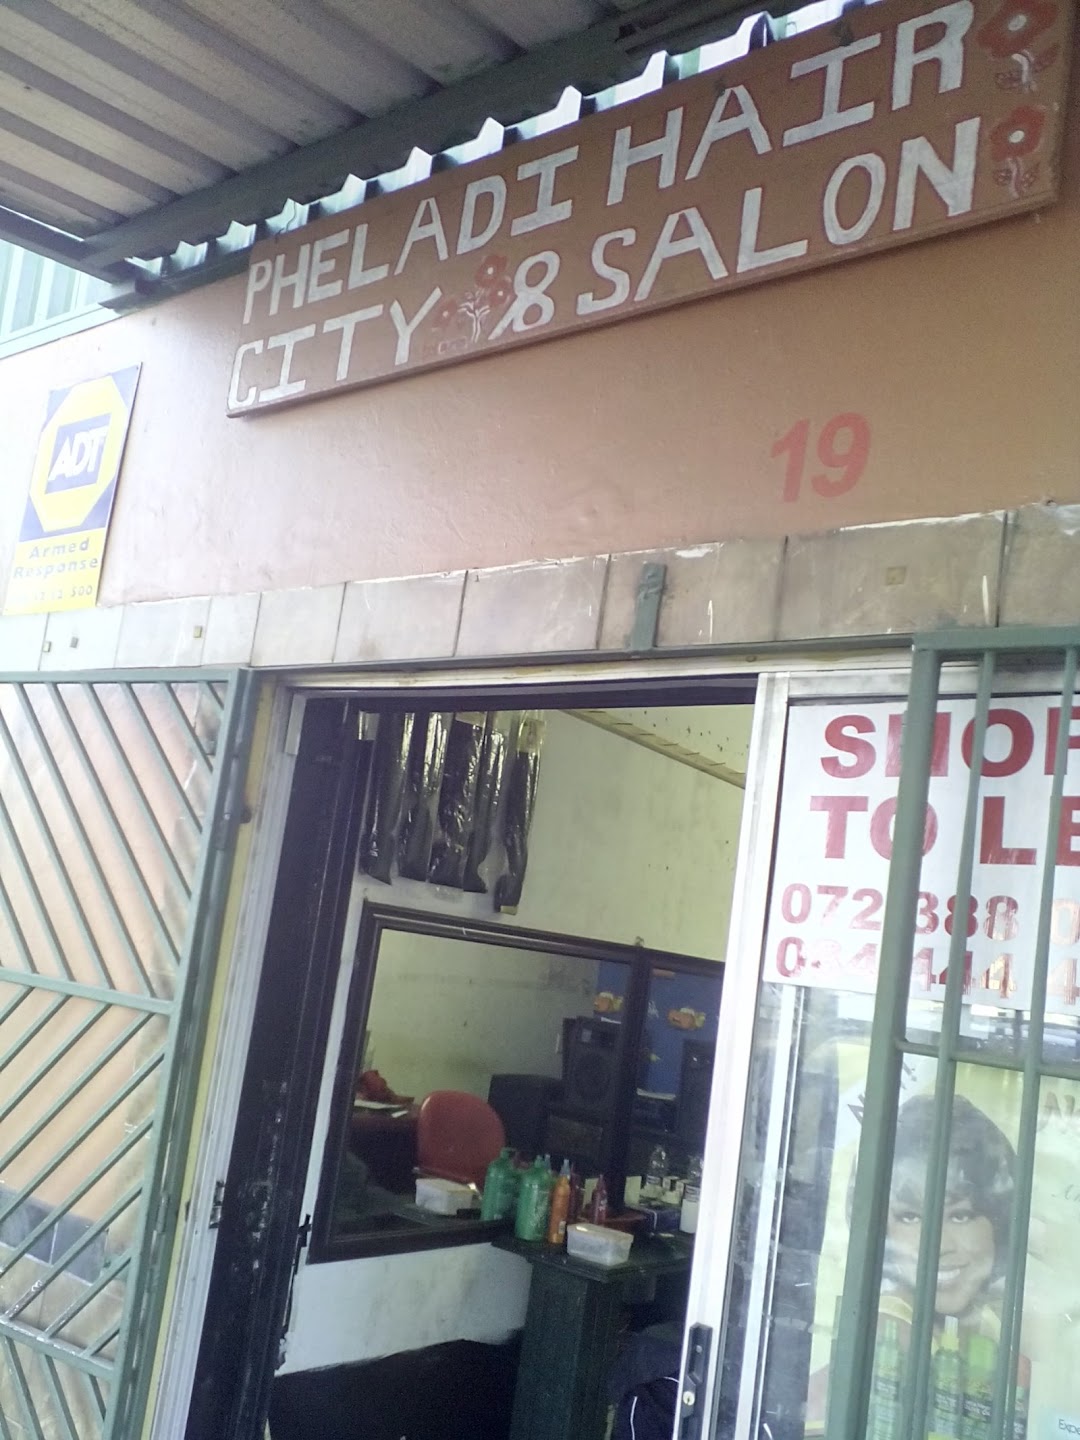 Pheladi Hair City Salon